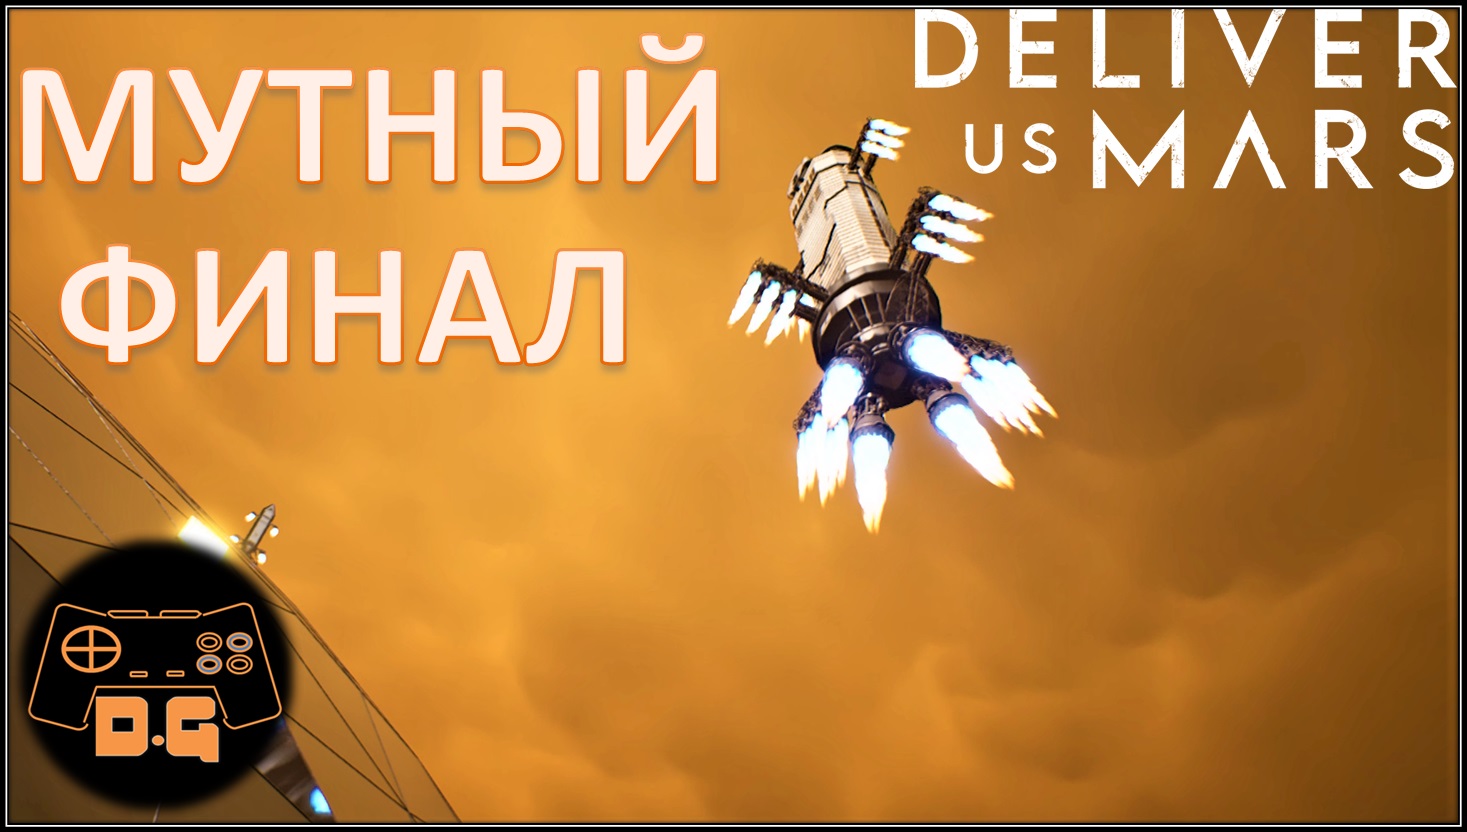 Deliver Us Mars ◈ МУТНЫЙ ФИНАЛ ◈ Что с людьми? ◈ #9